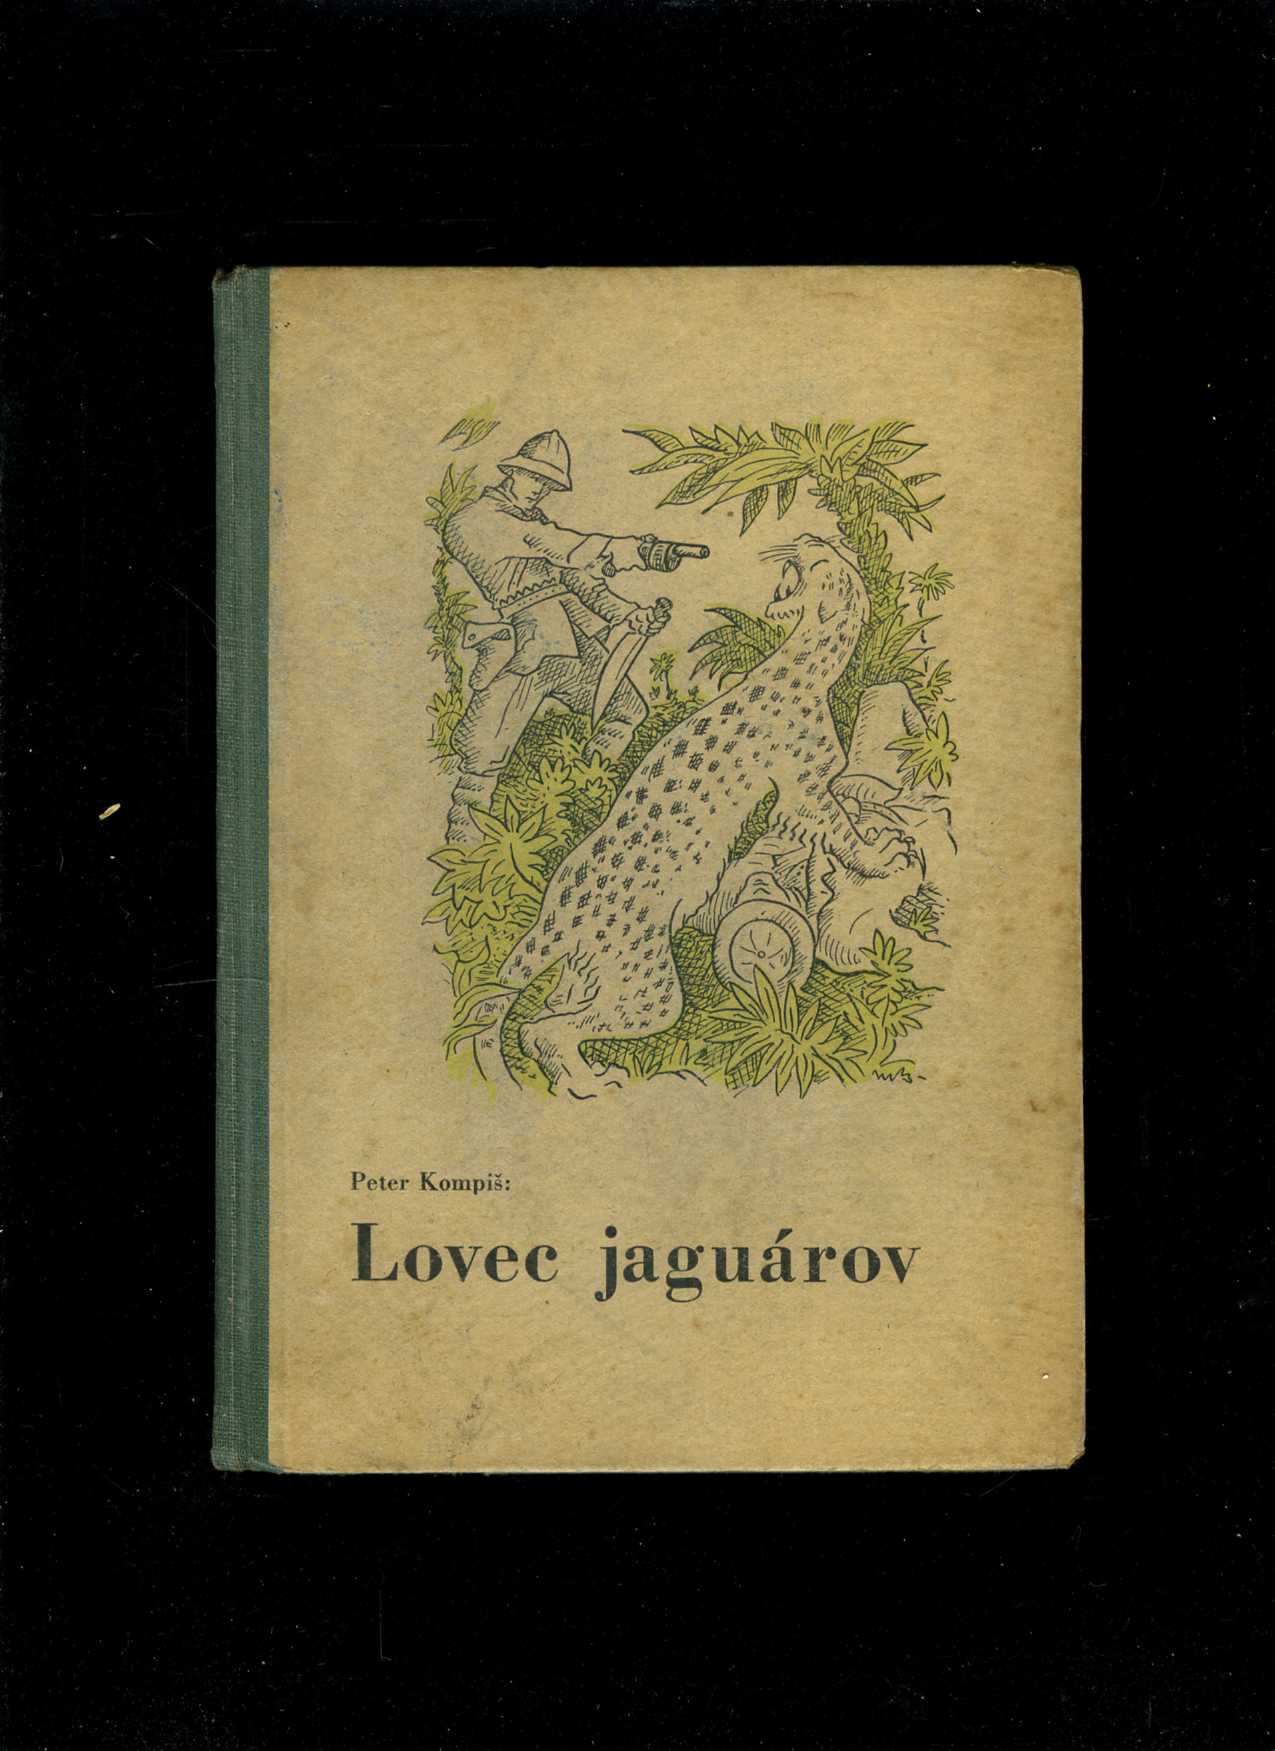 Lovec jaguárov (Peter Kompiš)